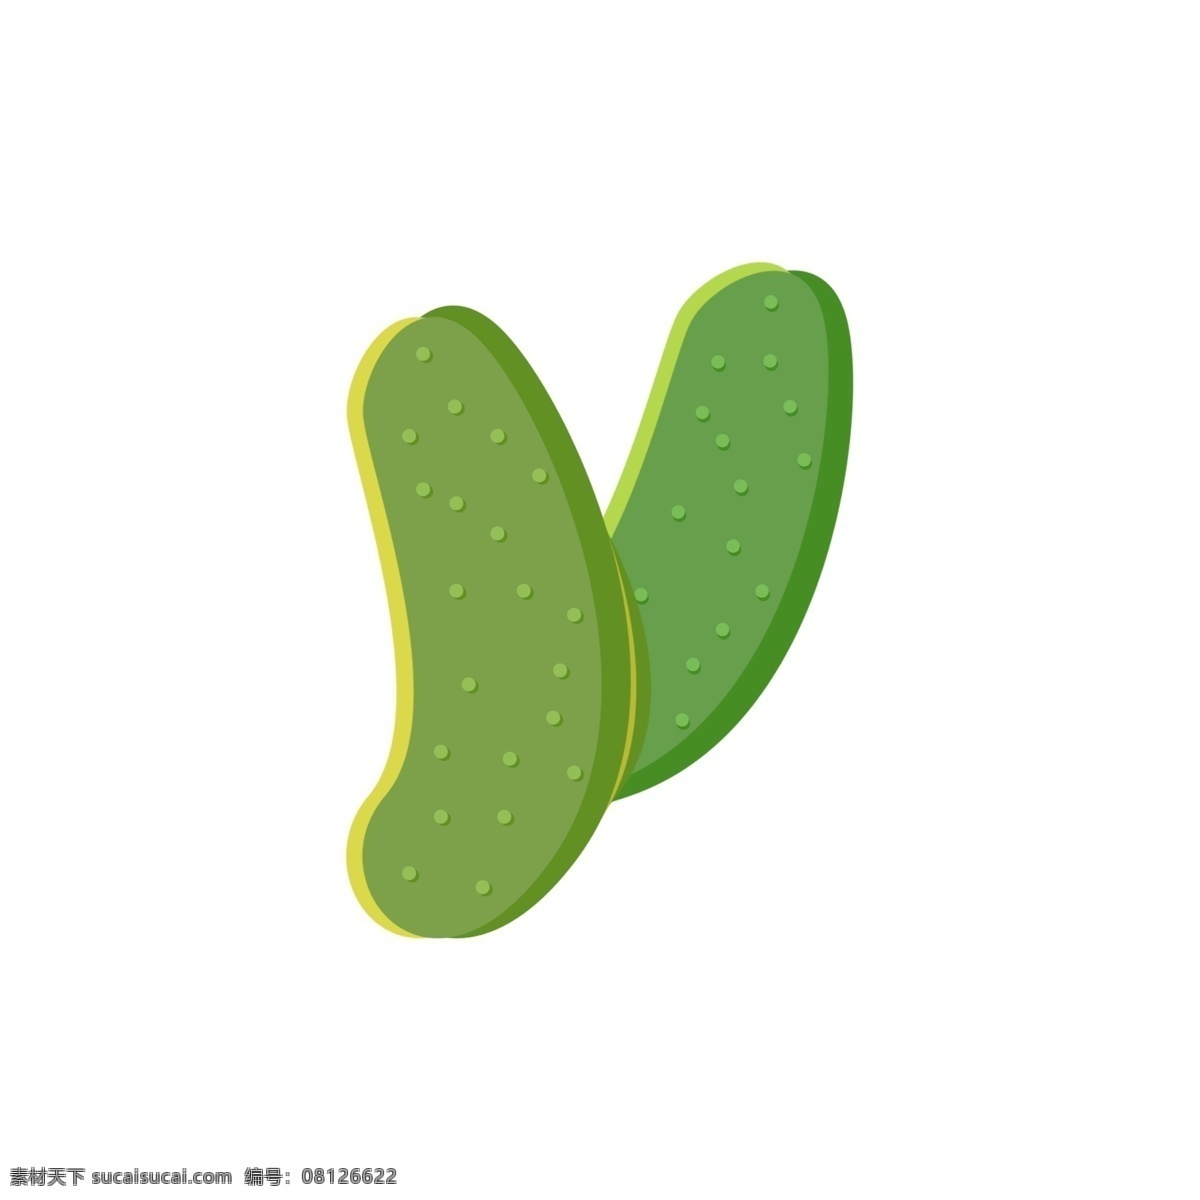 黄瓜 蔬菜水果 绿色 商用 小 元素 瓜果 清新 夏天 水果 凉爽